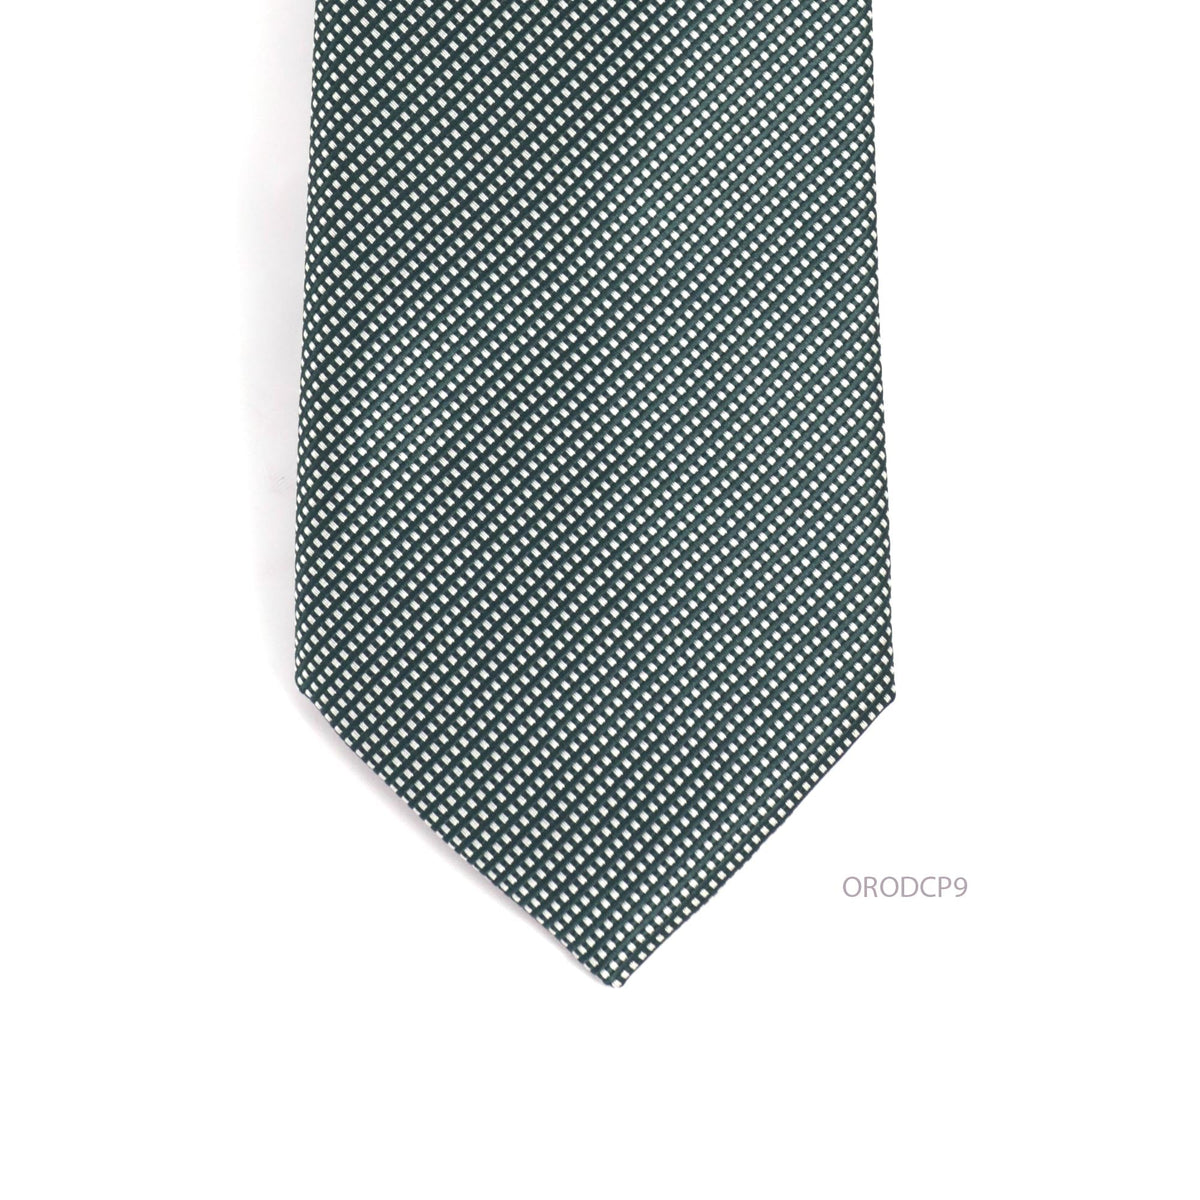 Orobianco L'unique Army Green white stripe Square dot necktie